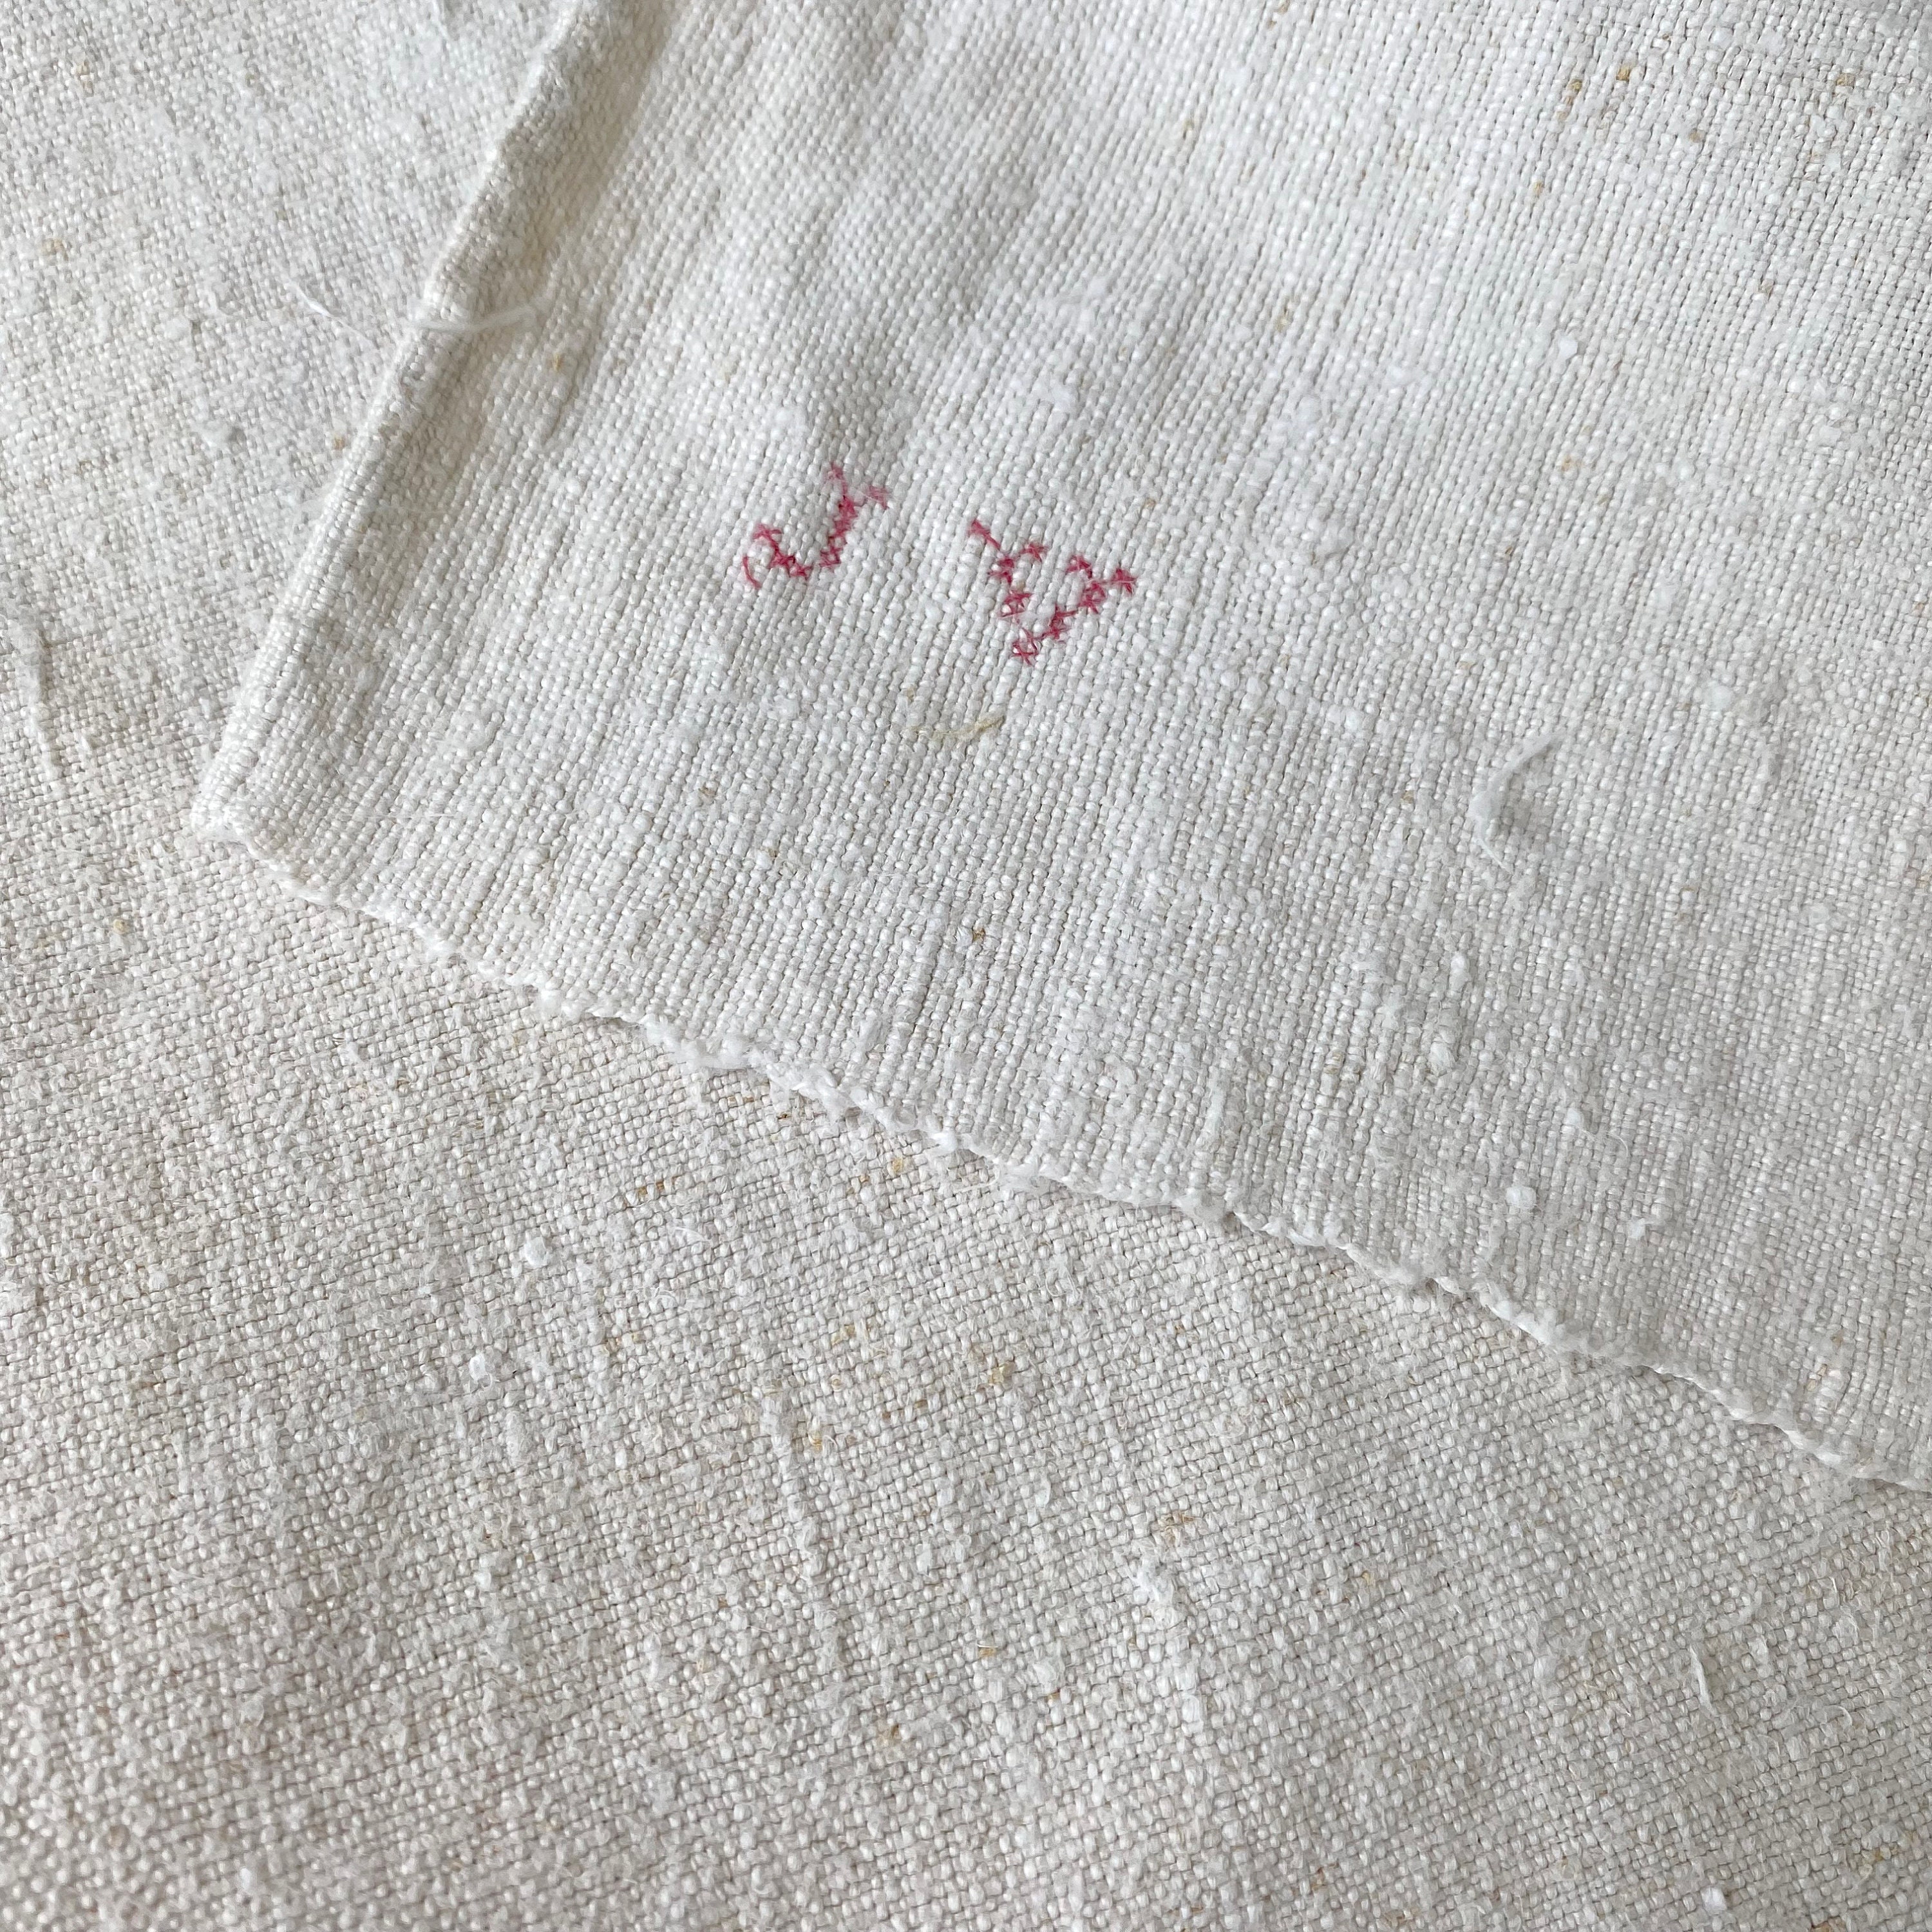 serviette de toilette français antique monogramme jv serviette chanvre tissé avec des onglets au milieu années 1800 ferme style campagnard